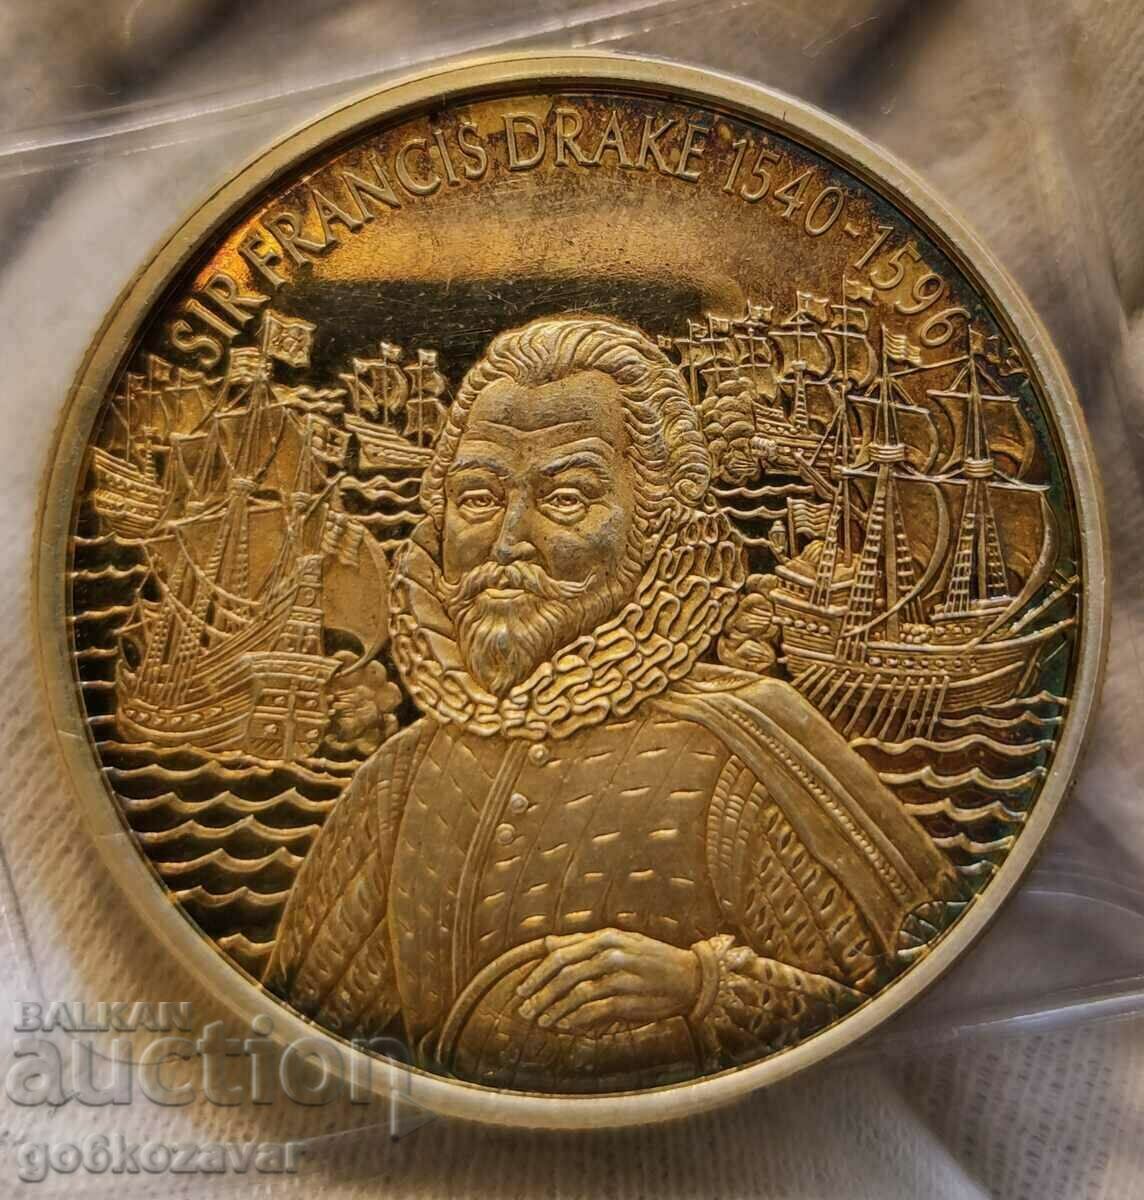 Ανατολική Καραϊβική 2 δολάρια 2003 Τεράστιο νόμισμα χρυσό 24 καρατίων